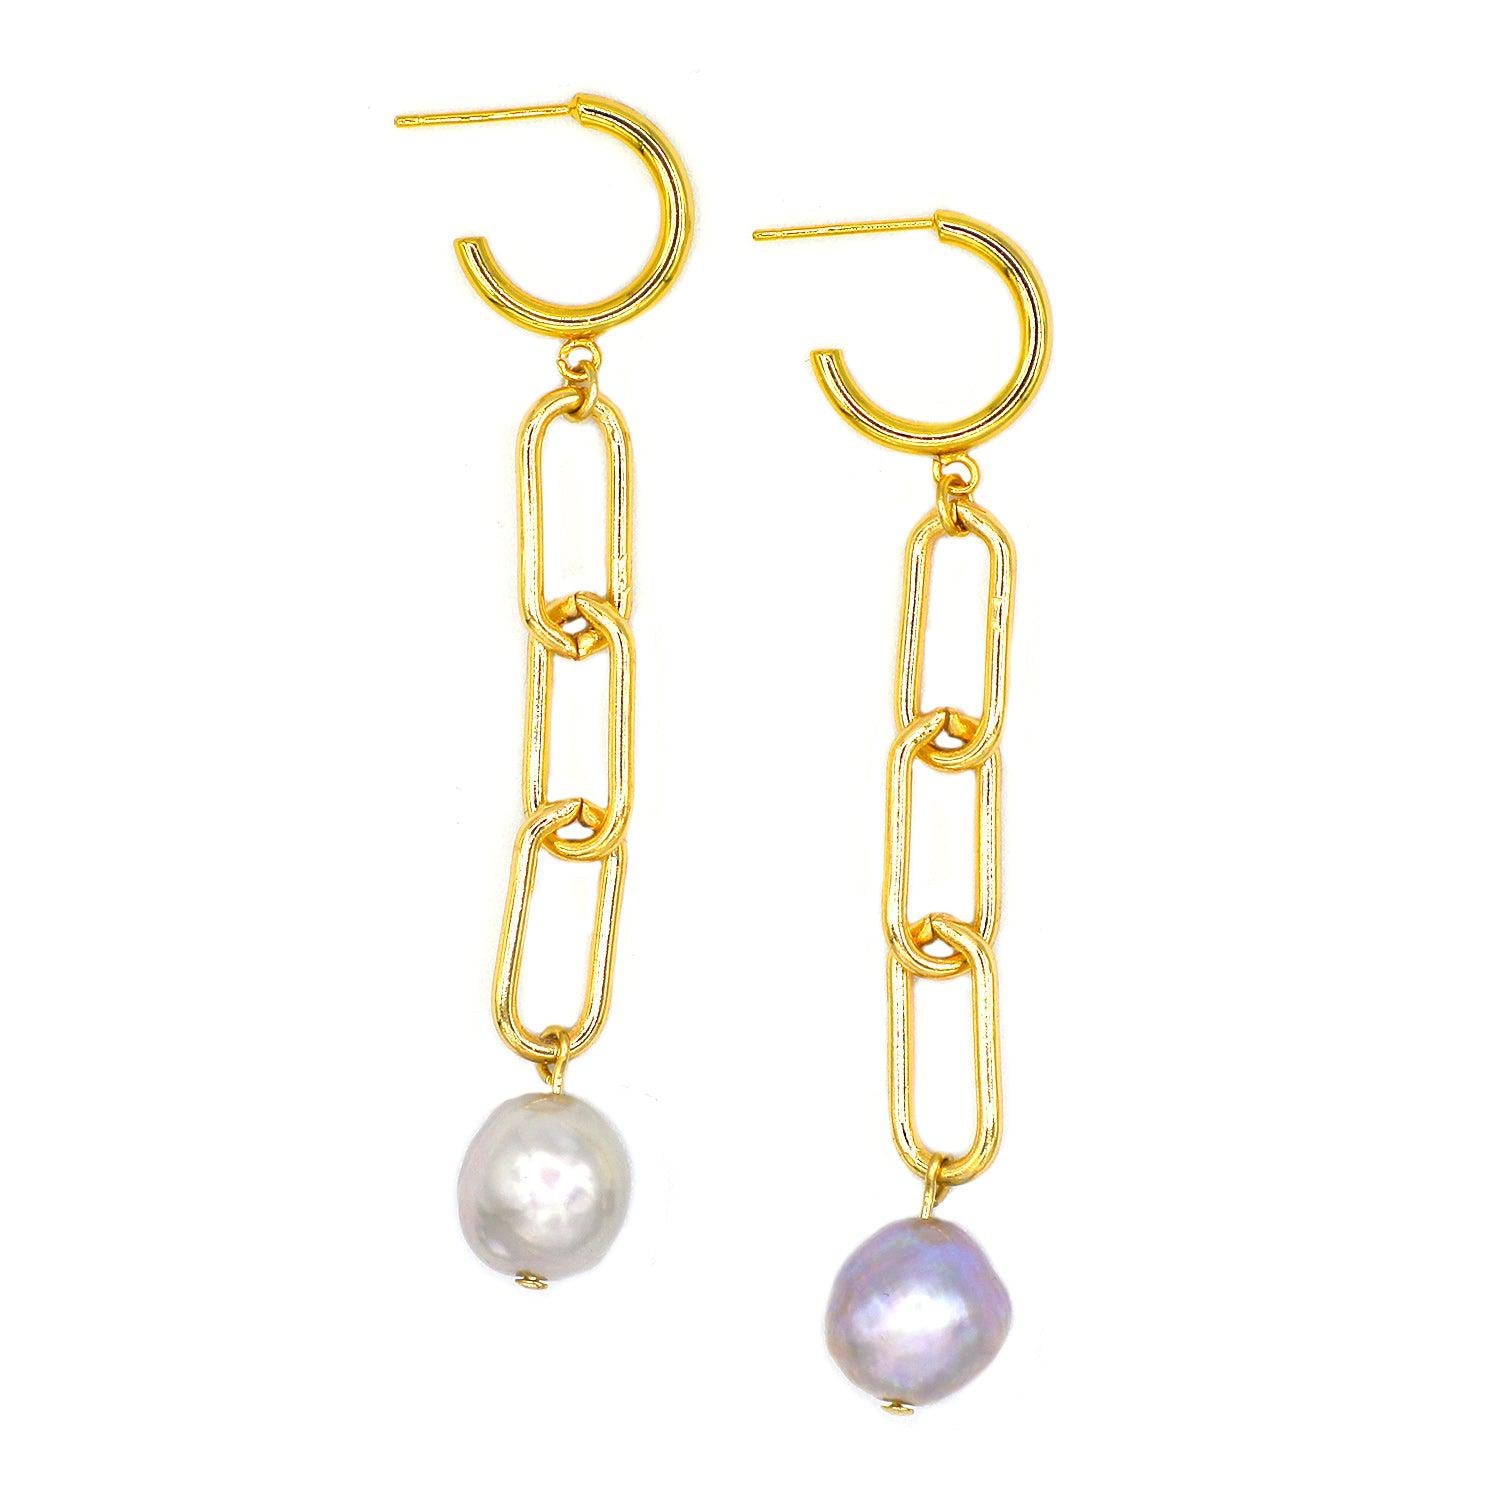 Modesty Pearl Earrings